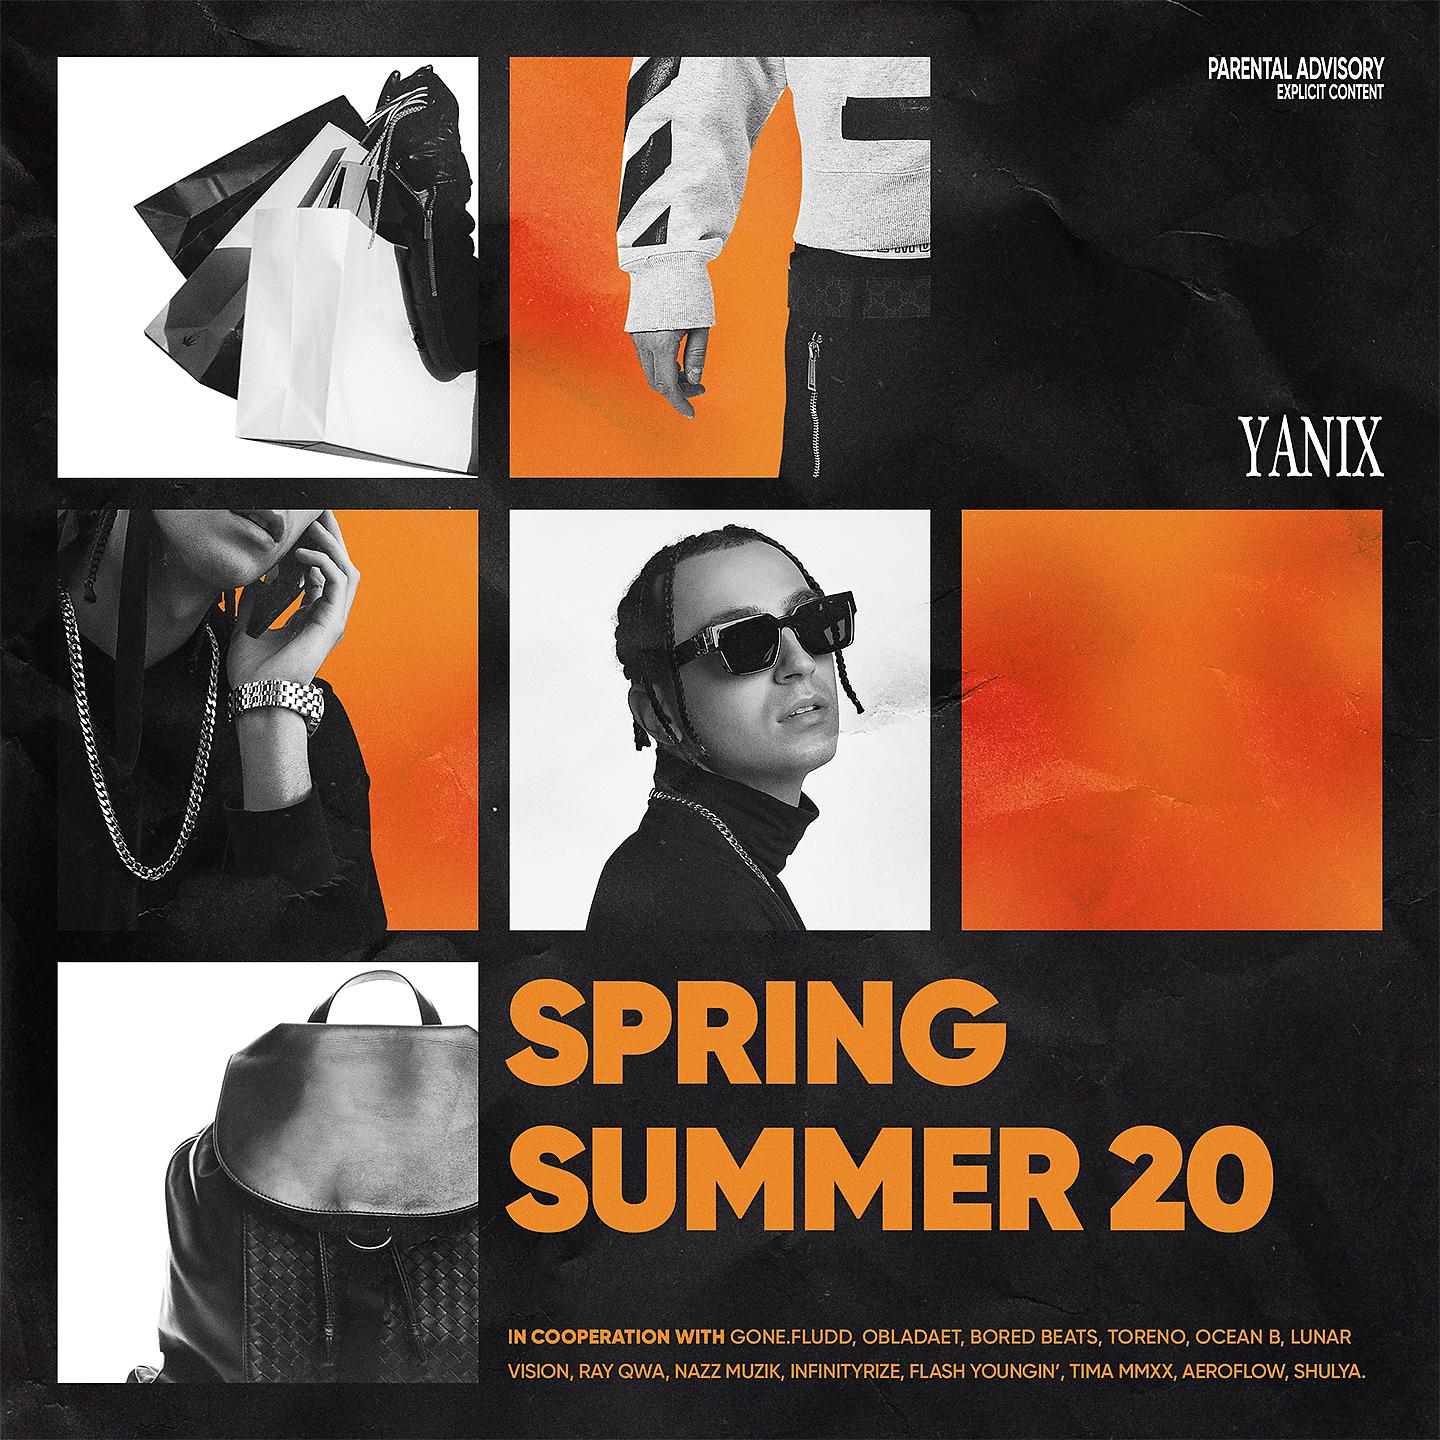 Рэп музыку альбомы. Yanix рэпер 2021. Яникс 2022. Ss20 яникс обложка. Yanix обложка альбома.